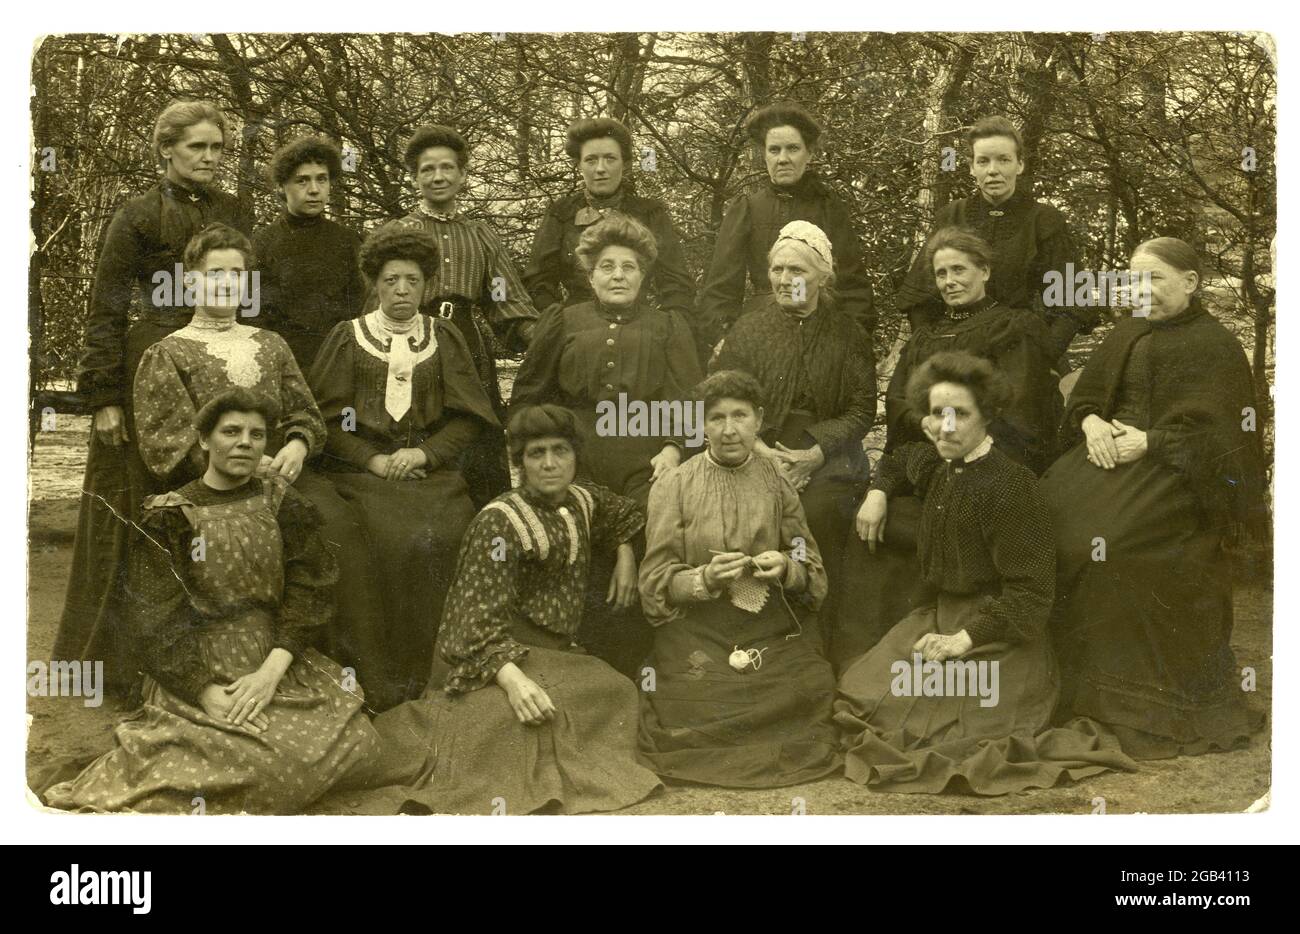 Originale RPPC edoardiano (cartolina fotografica reale) di gruppo di donne all'aperto, tutte le età, tra cui anziana e donna nera eta, convalescing pazienti in un ospedale, possibilmente Cookridge Convalescent casa, pubblicato il 1908 aprile Horsforth, Leeds, Regno Unito Foto Stock